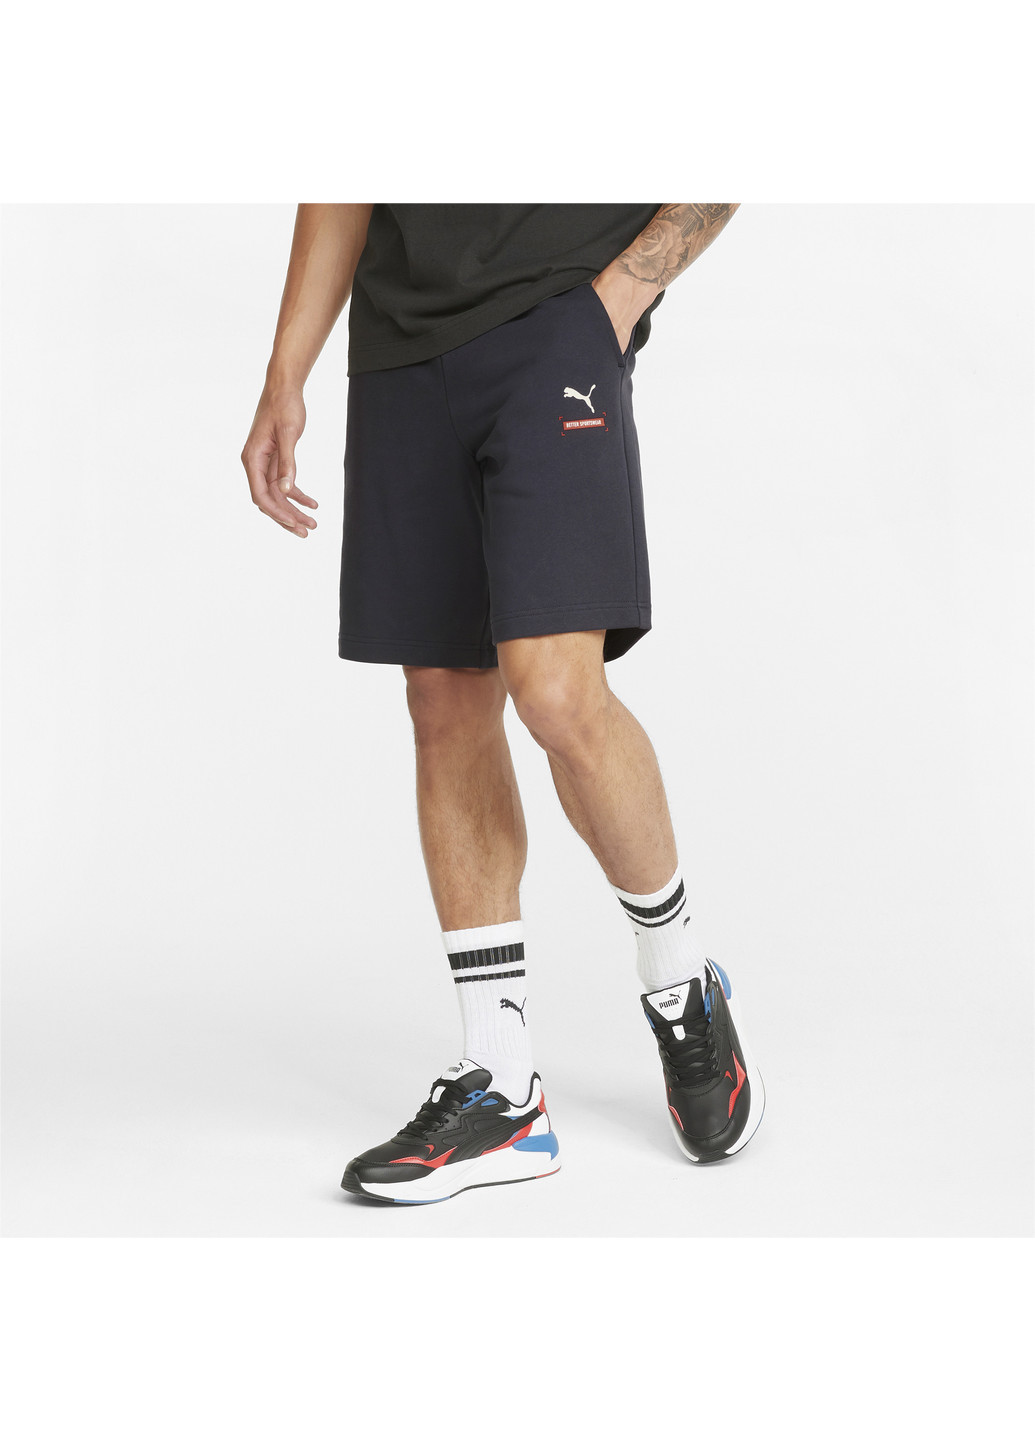 Шорты Better Men's Shorts Puma однотонные чёрные спортивные хлопок